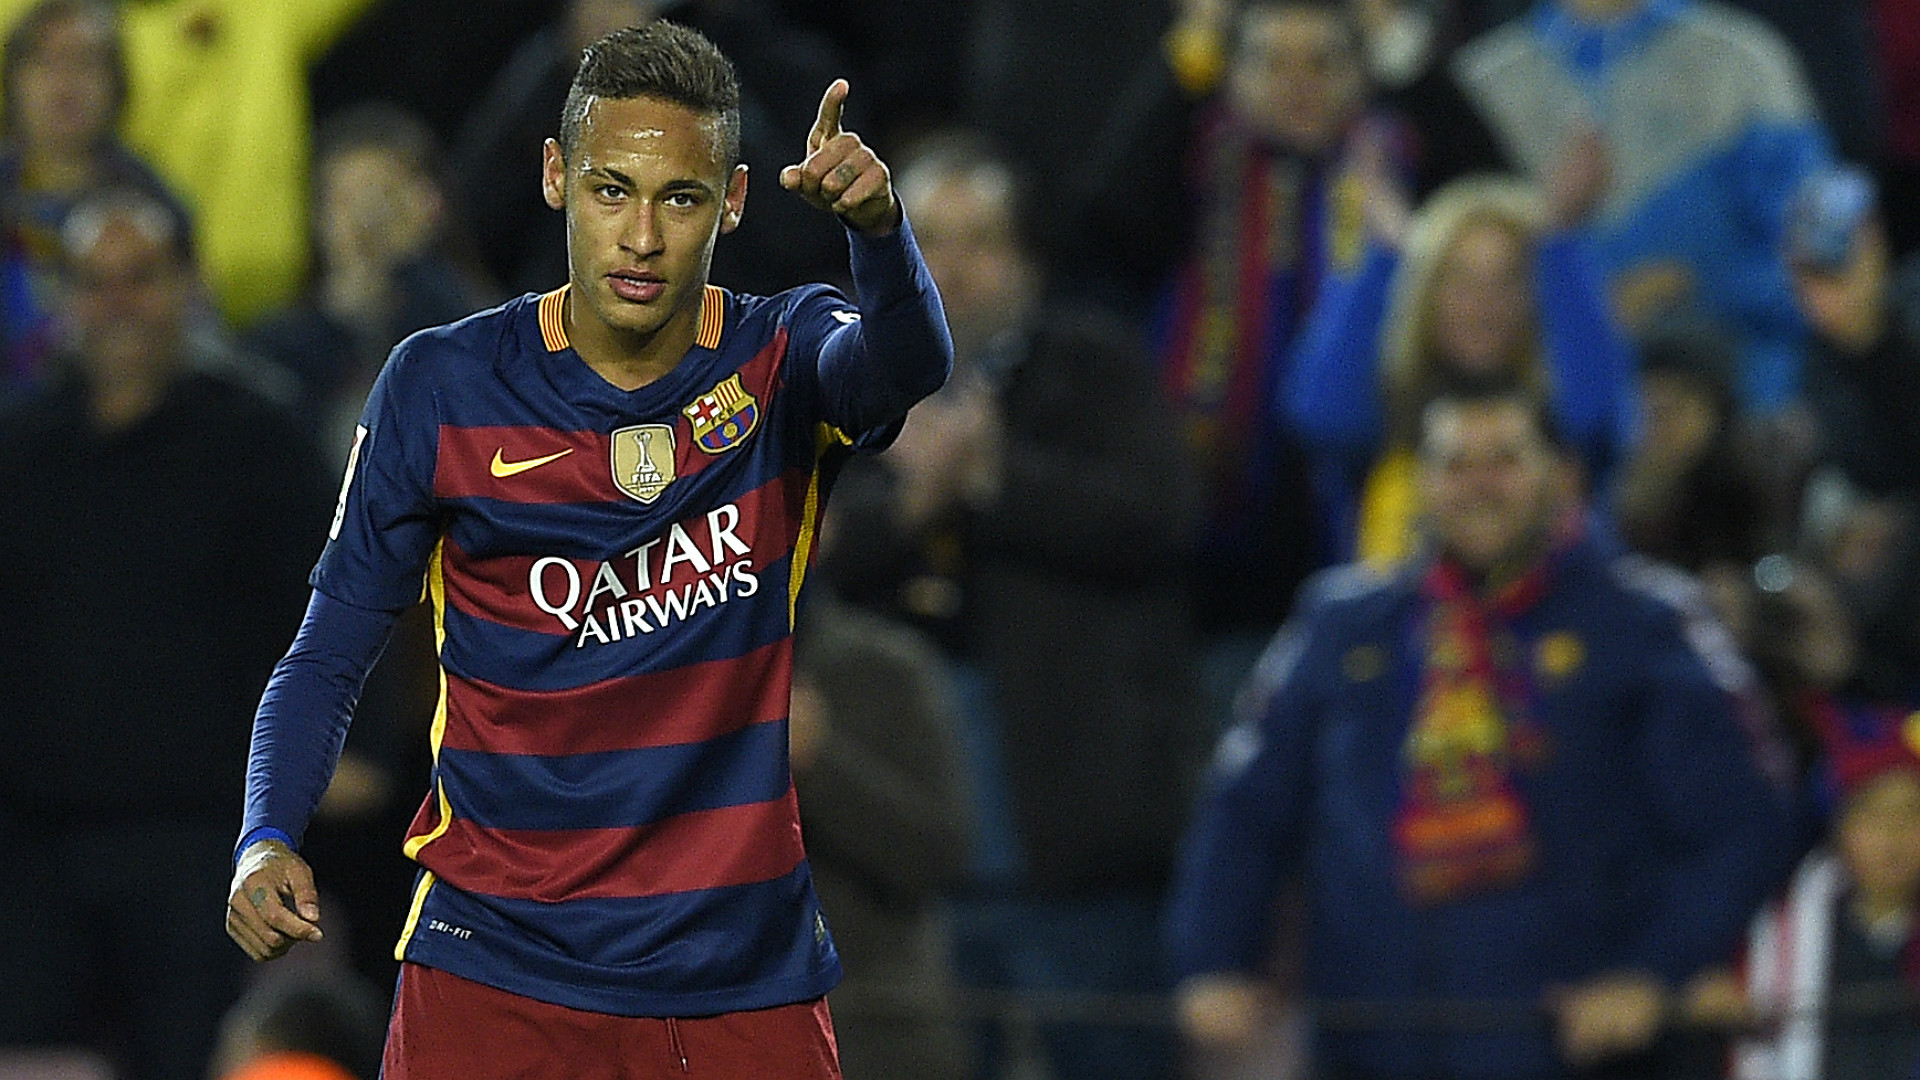 Starul echipei Paris Saint-Germain, Neymar, a fost amendat de justiţia braziliană cu un milion de euro pentru evaziune fiscală